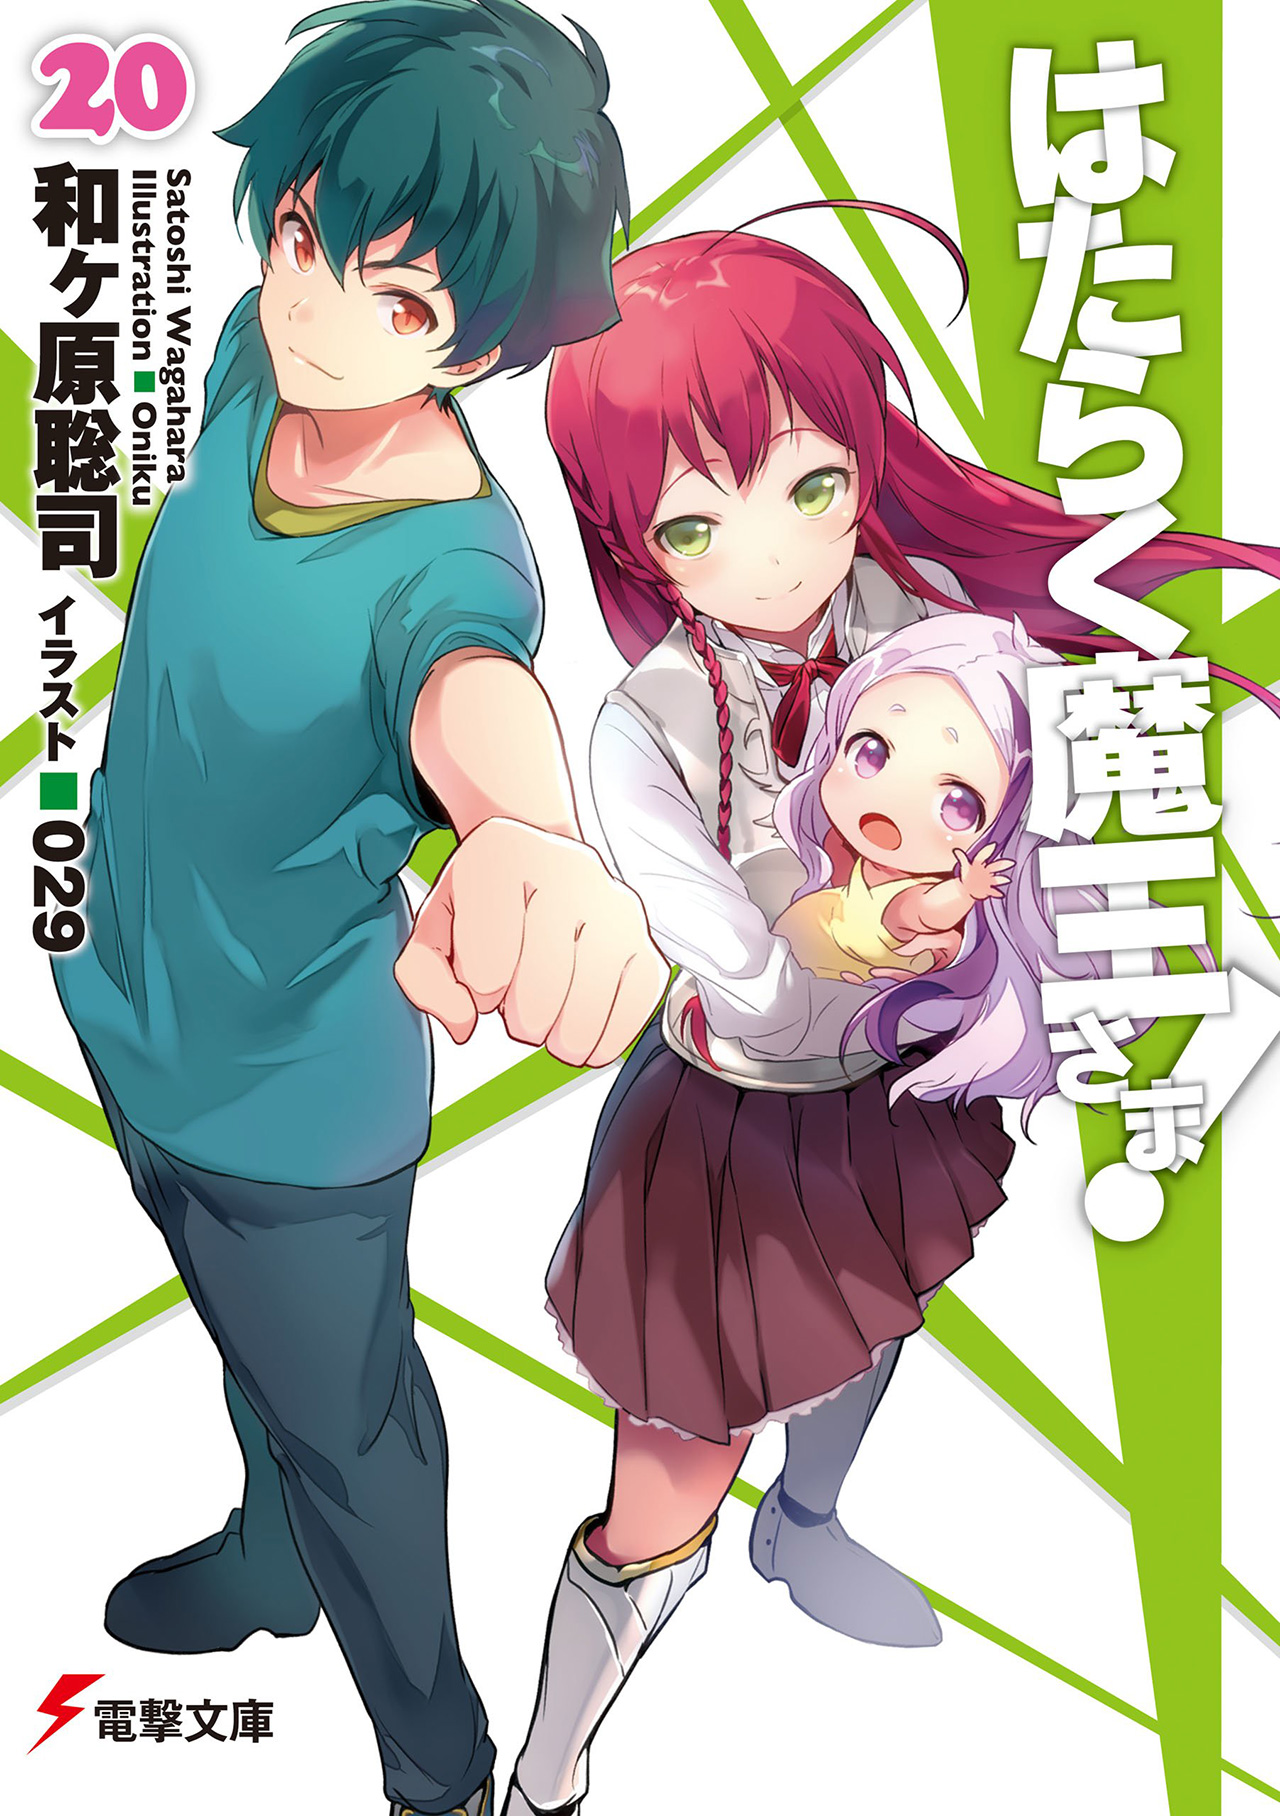 Hataraku Maou-sama! com 3.5 milhões de cópias